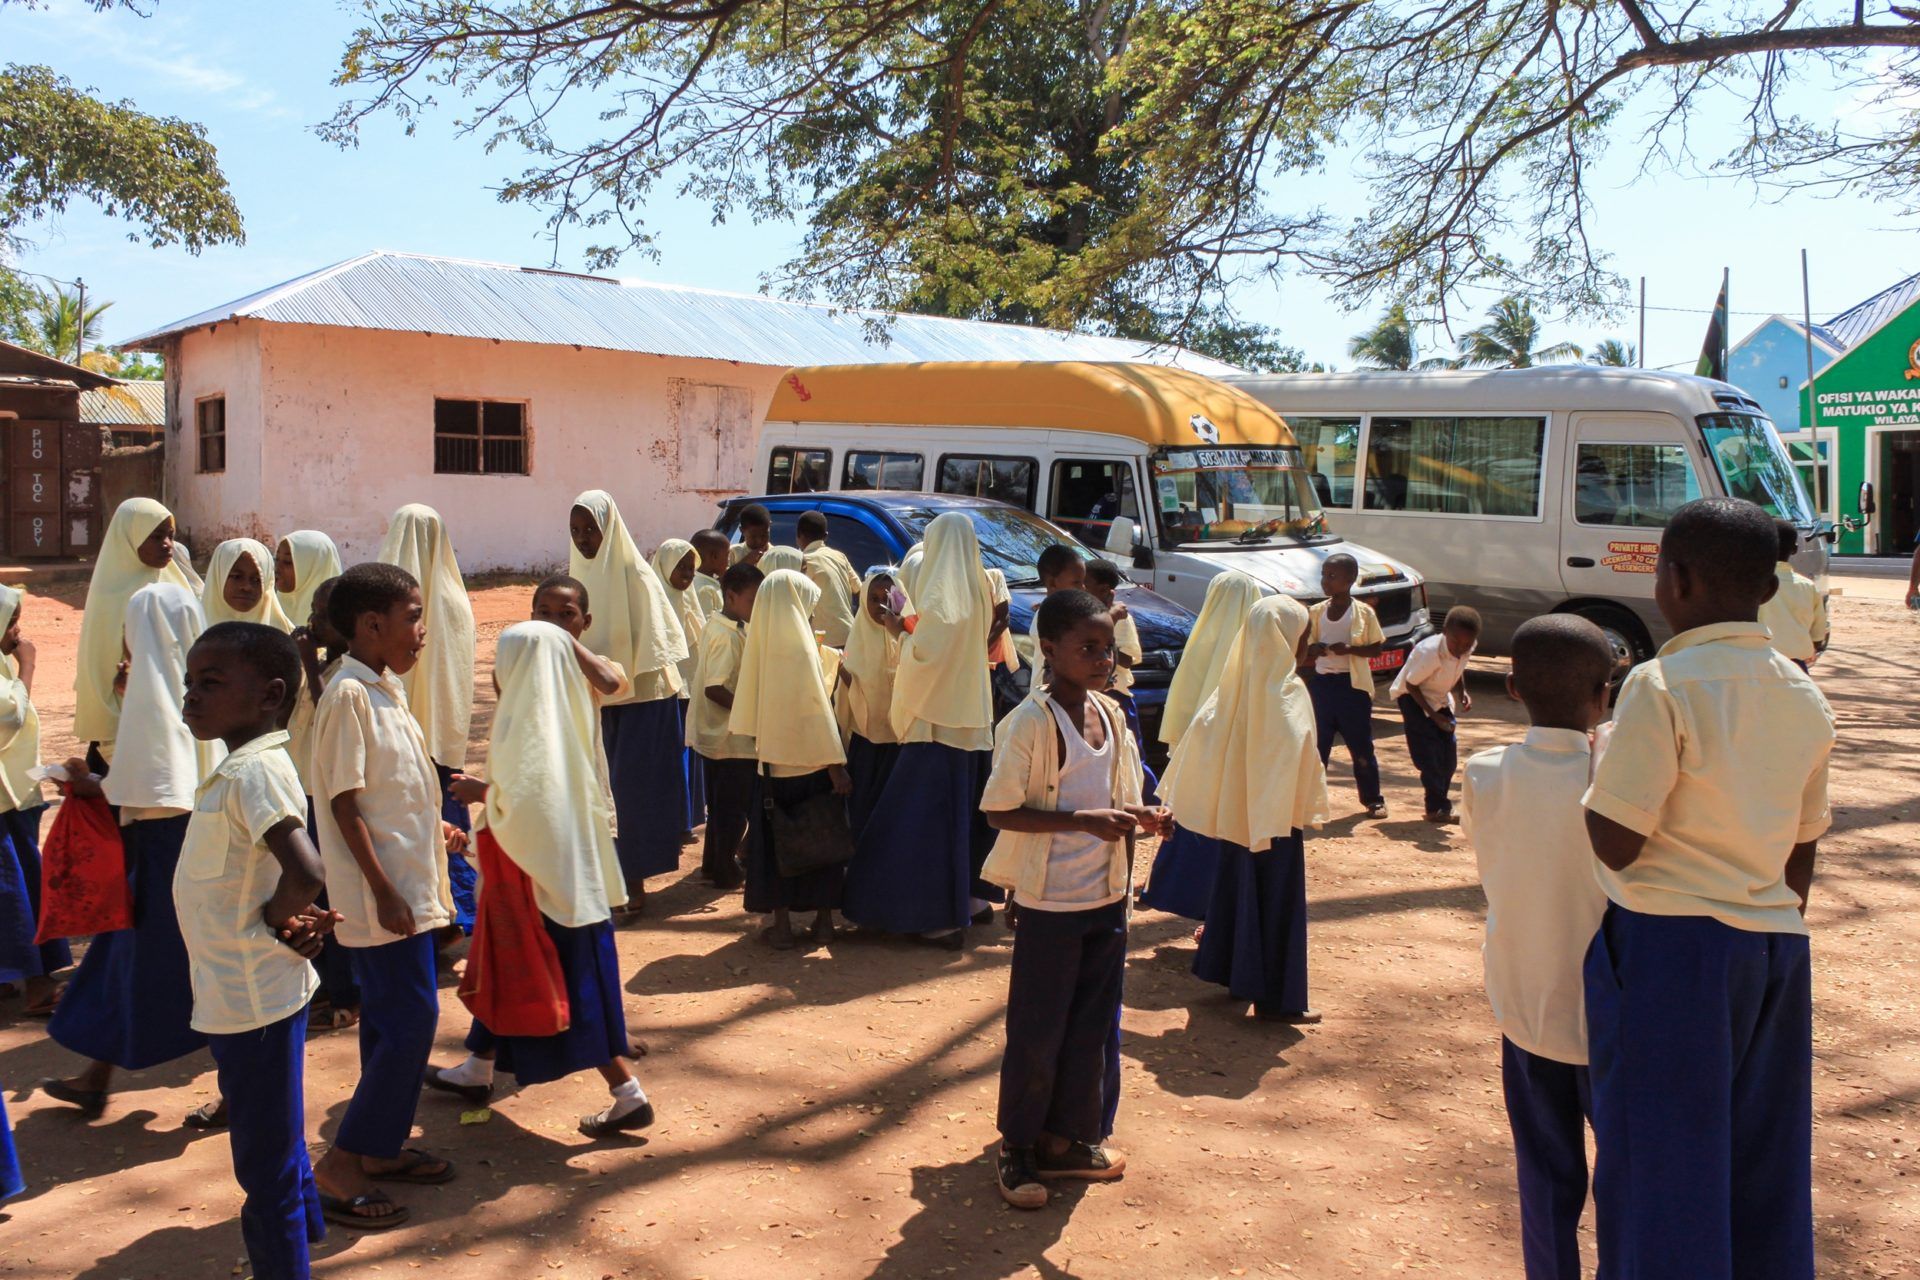 Tanzania school children